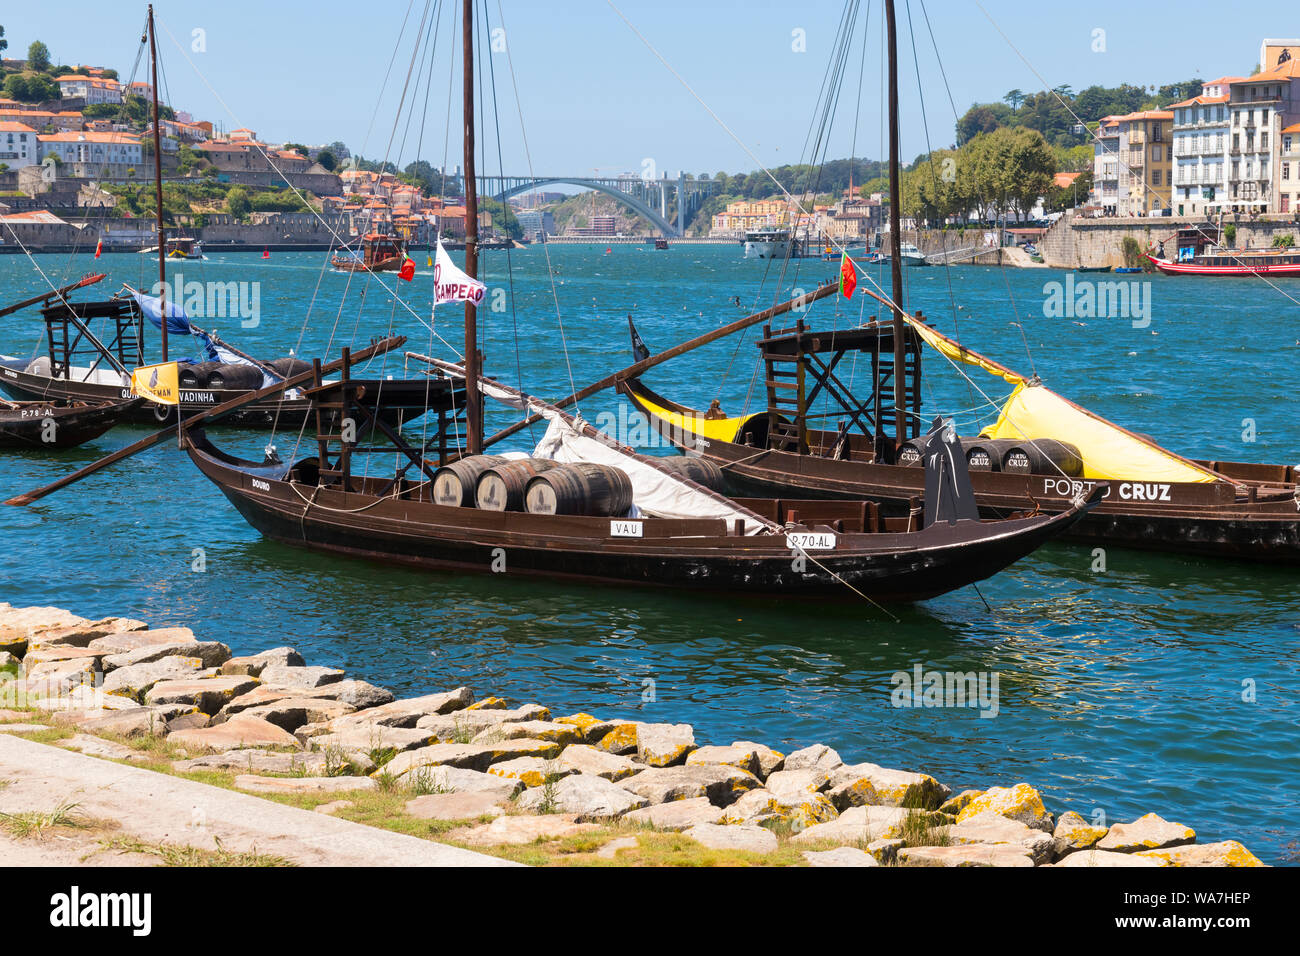 Portugal Vila Nova de Gaia Rio Douro remblai promenade vin vieux port bateau à voile ketch Porto Ferreira barils sails cityscape panorama Banque D'Images